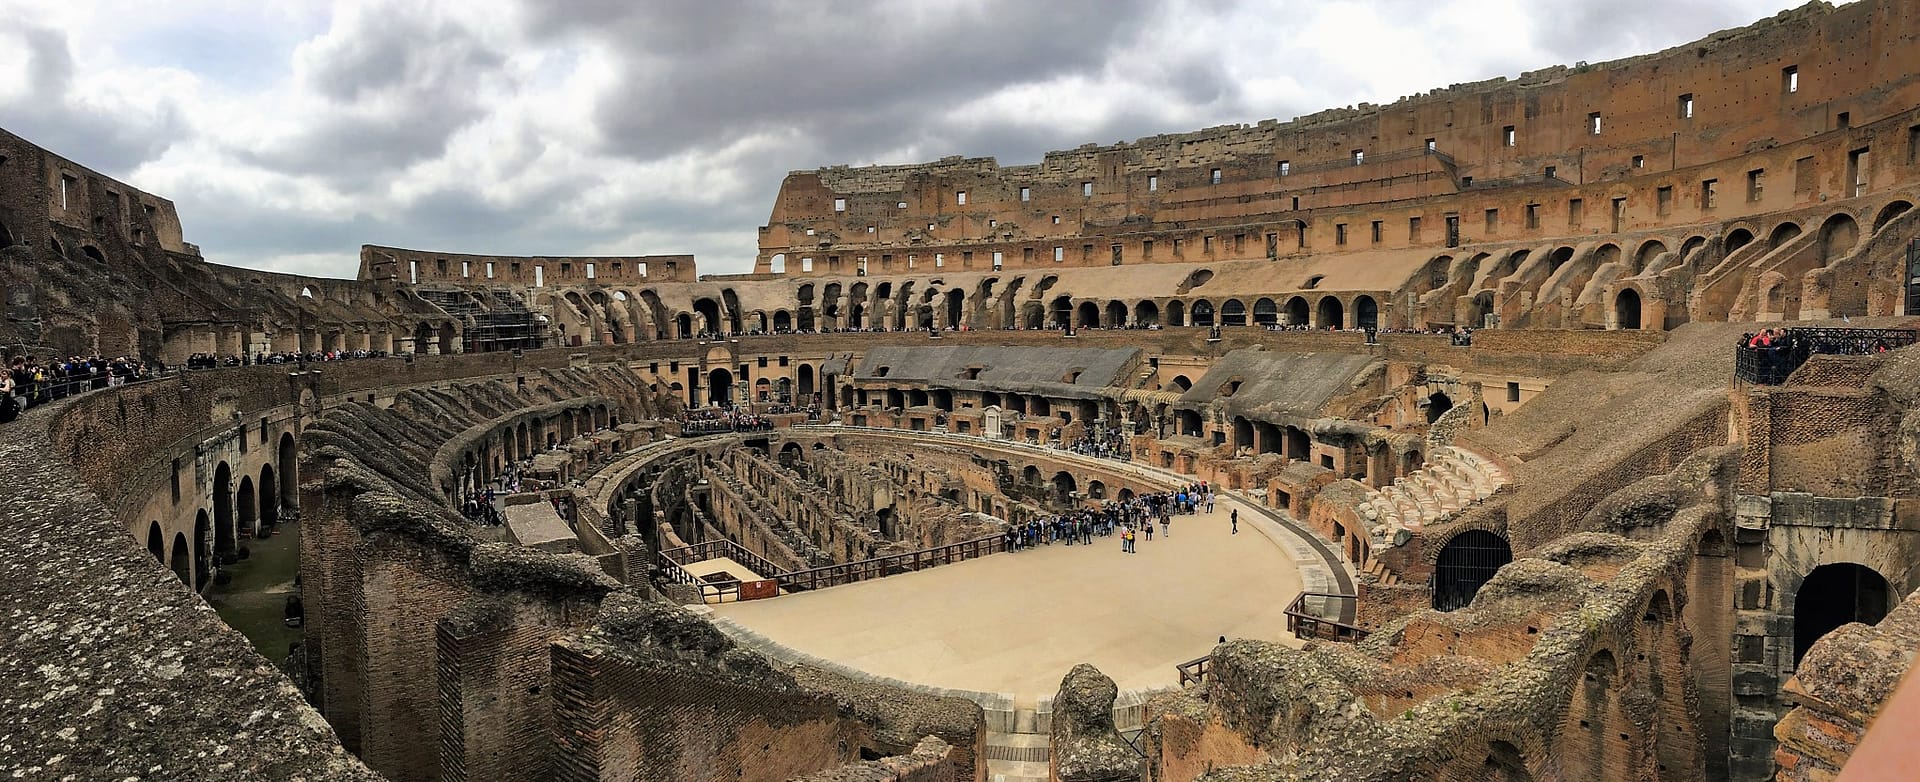 El coloso de Roma: historia resumida